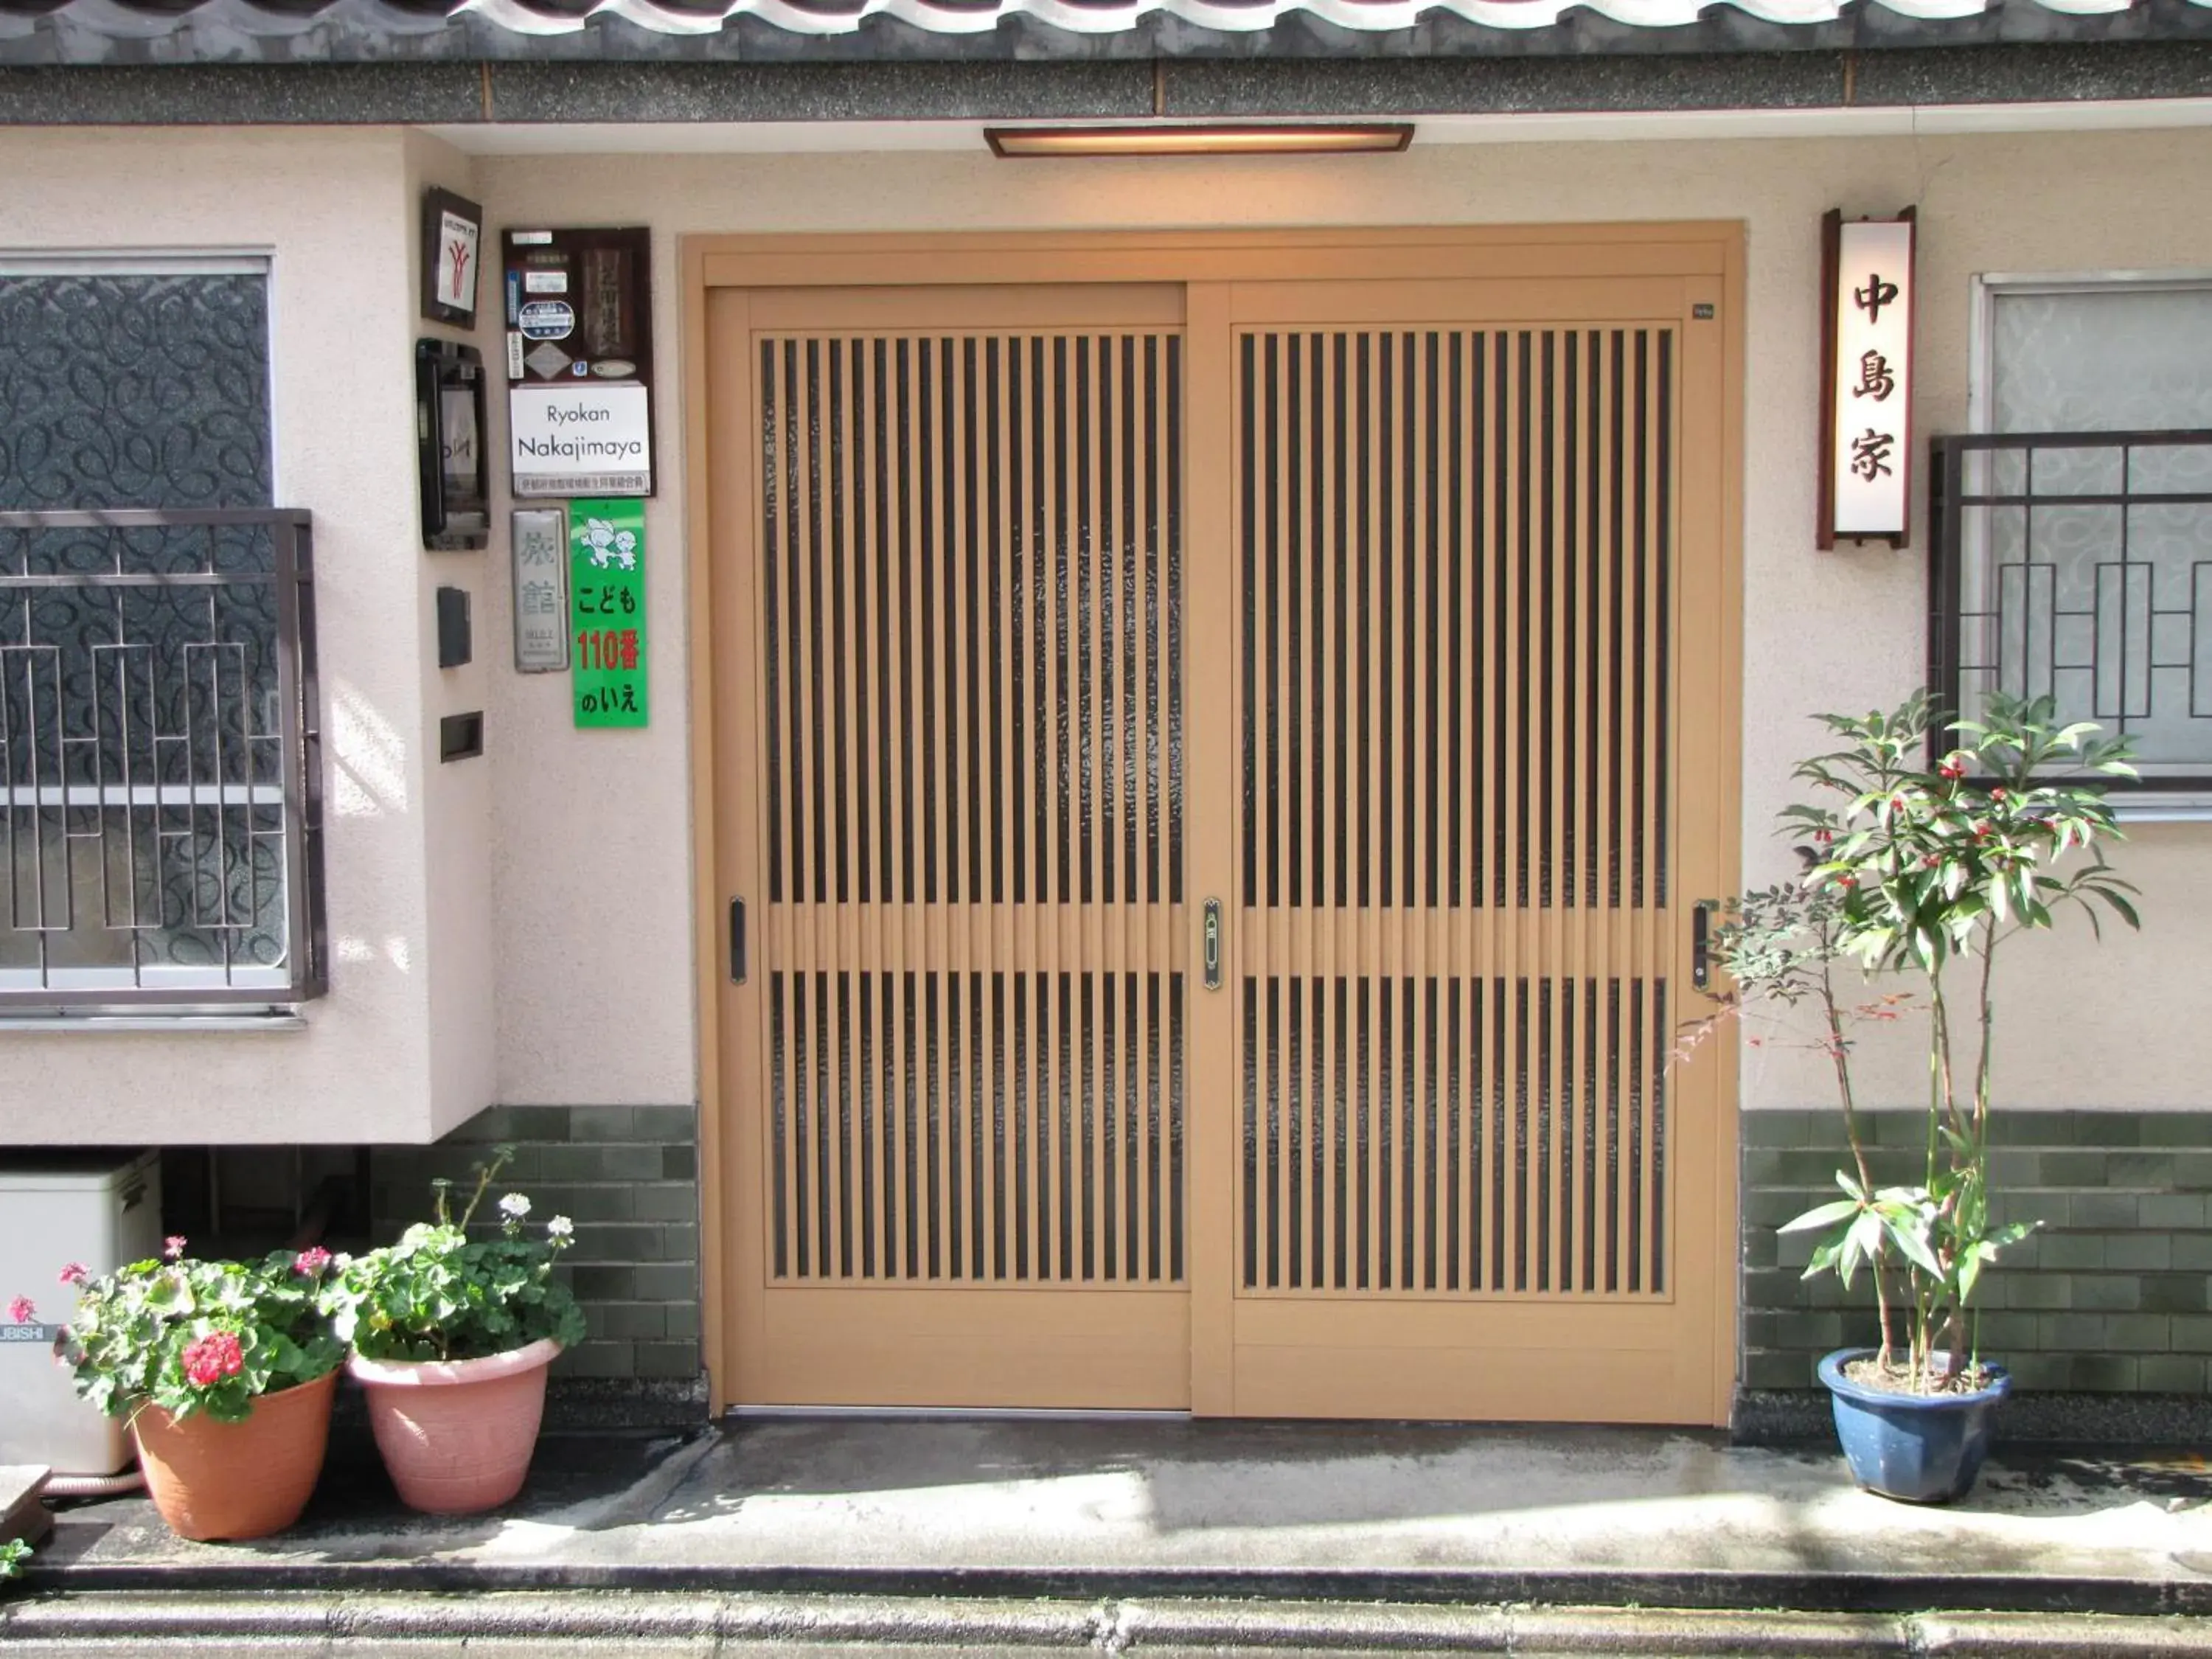 Facade/Entrance in Ryokan Nakajimaya